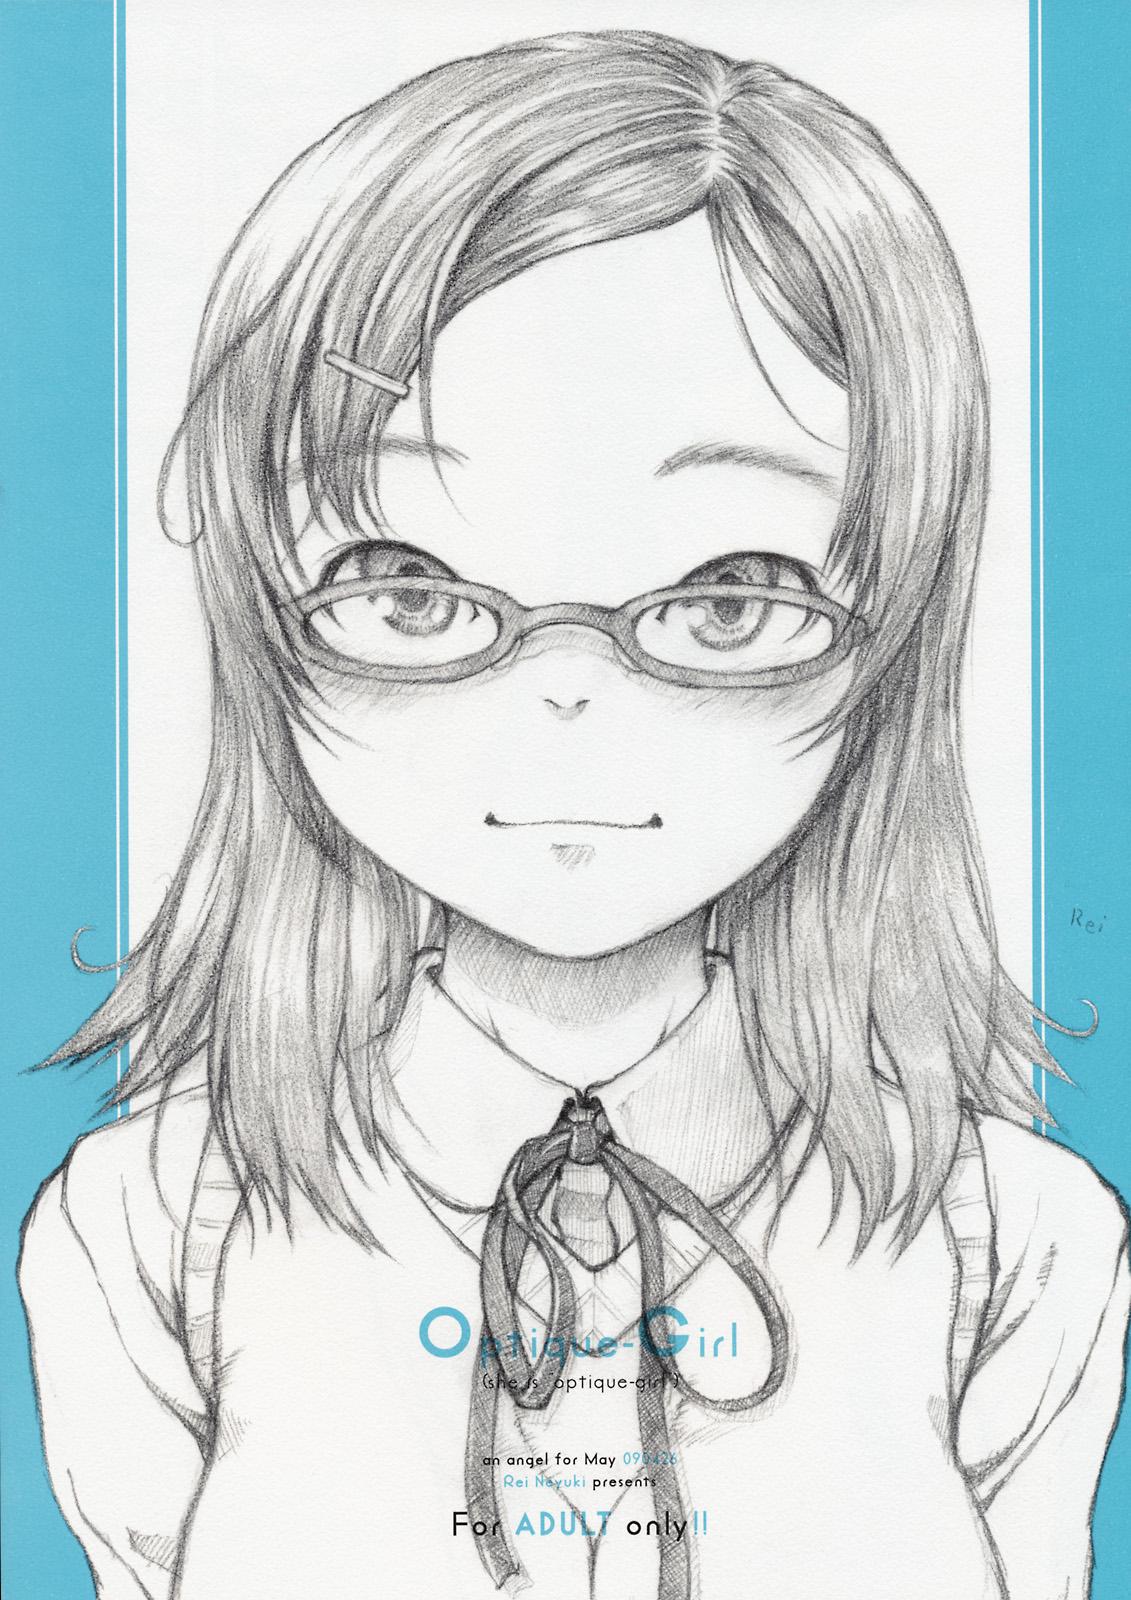 Optique-Girl 0